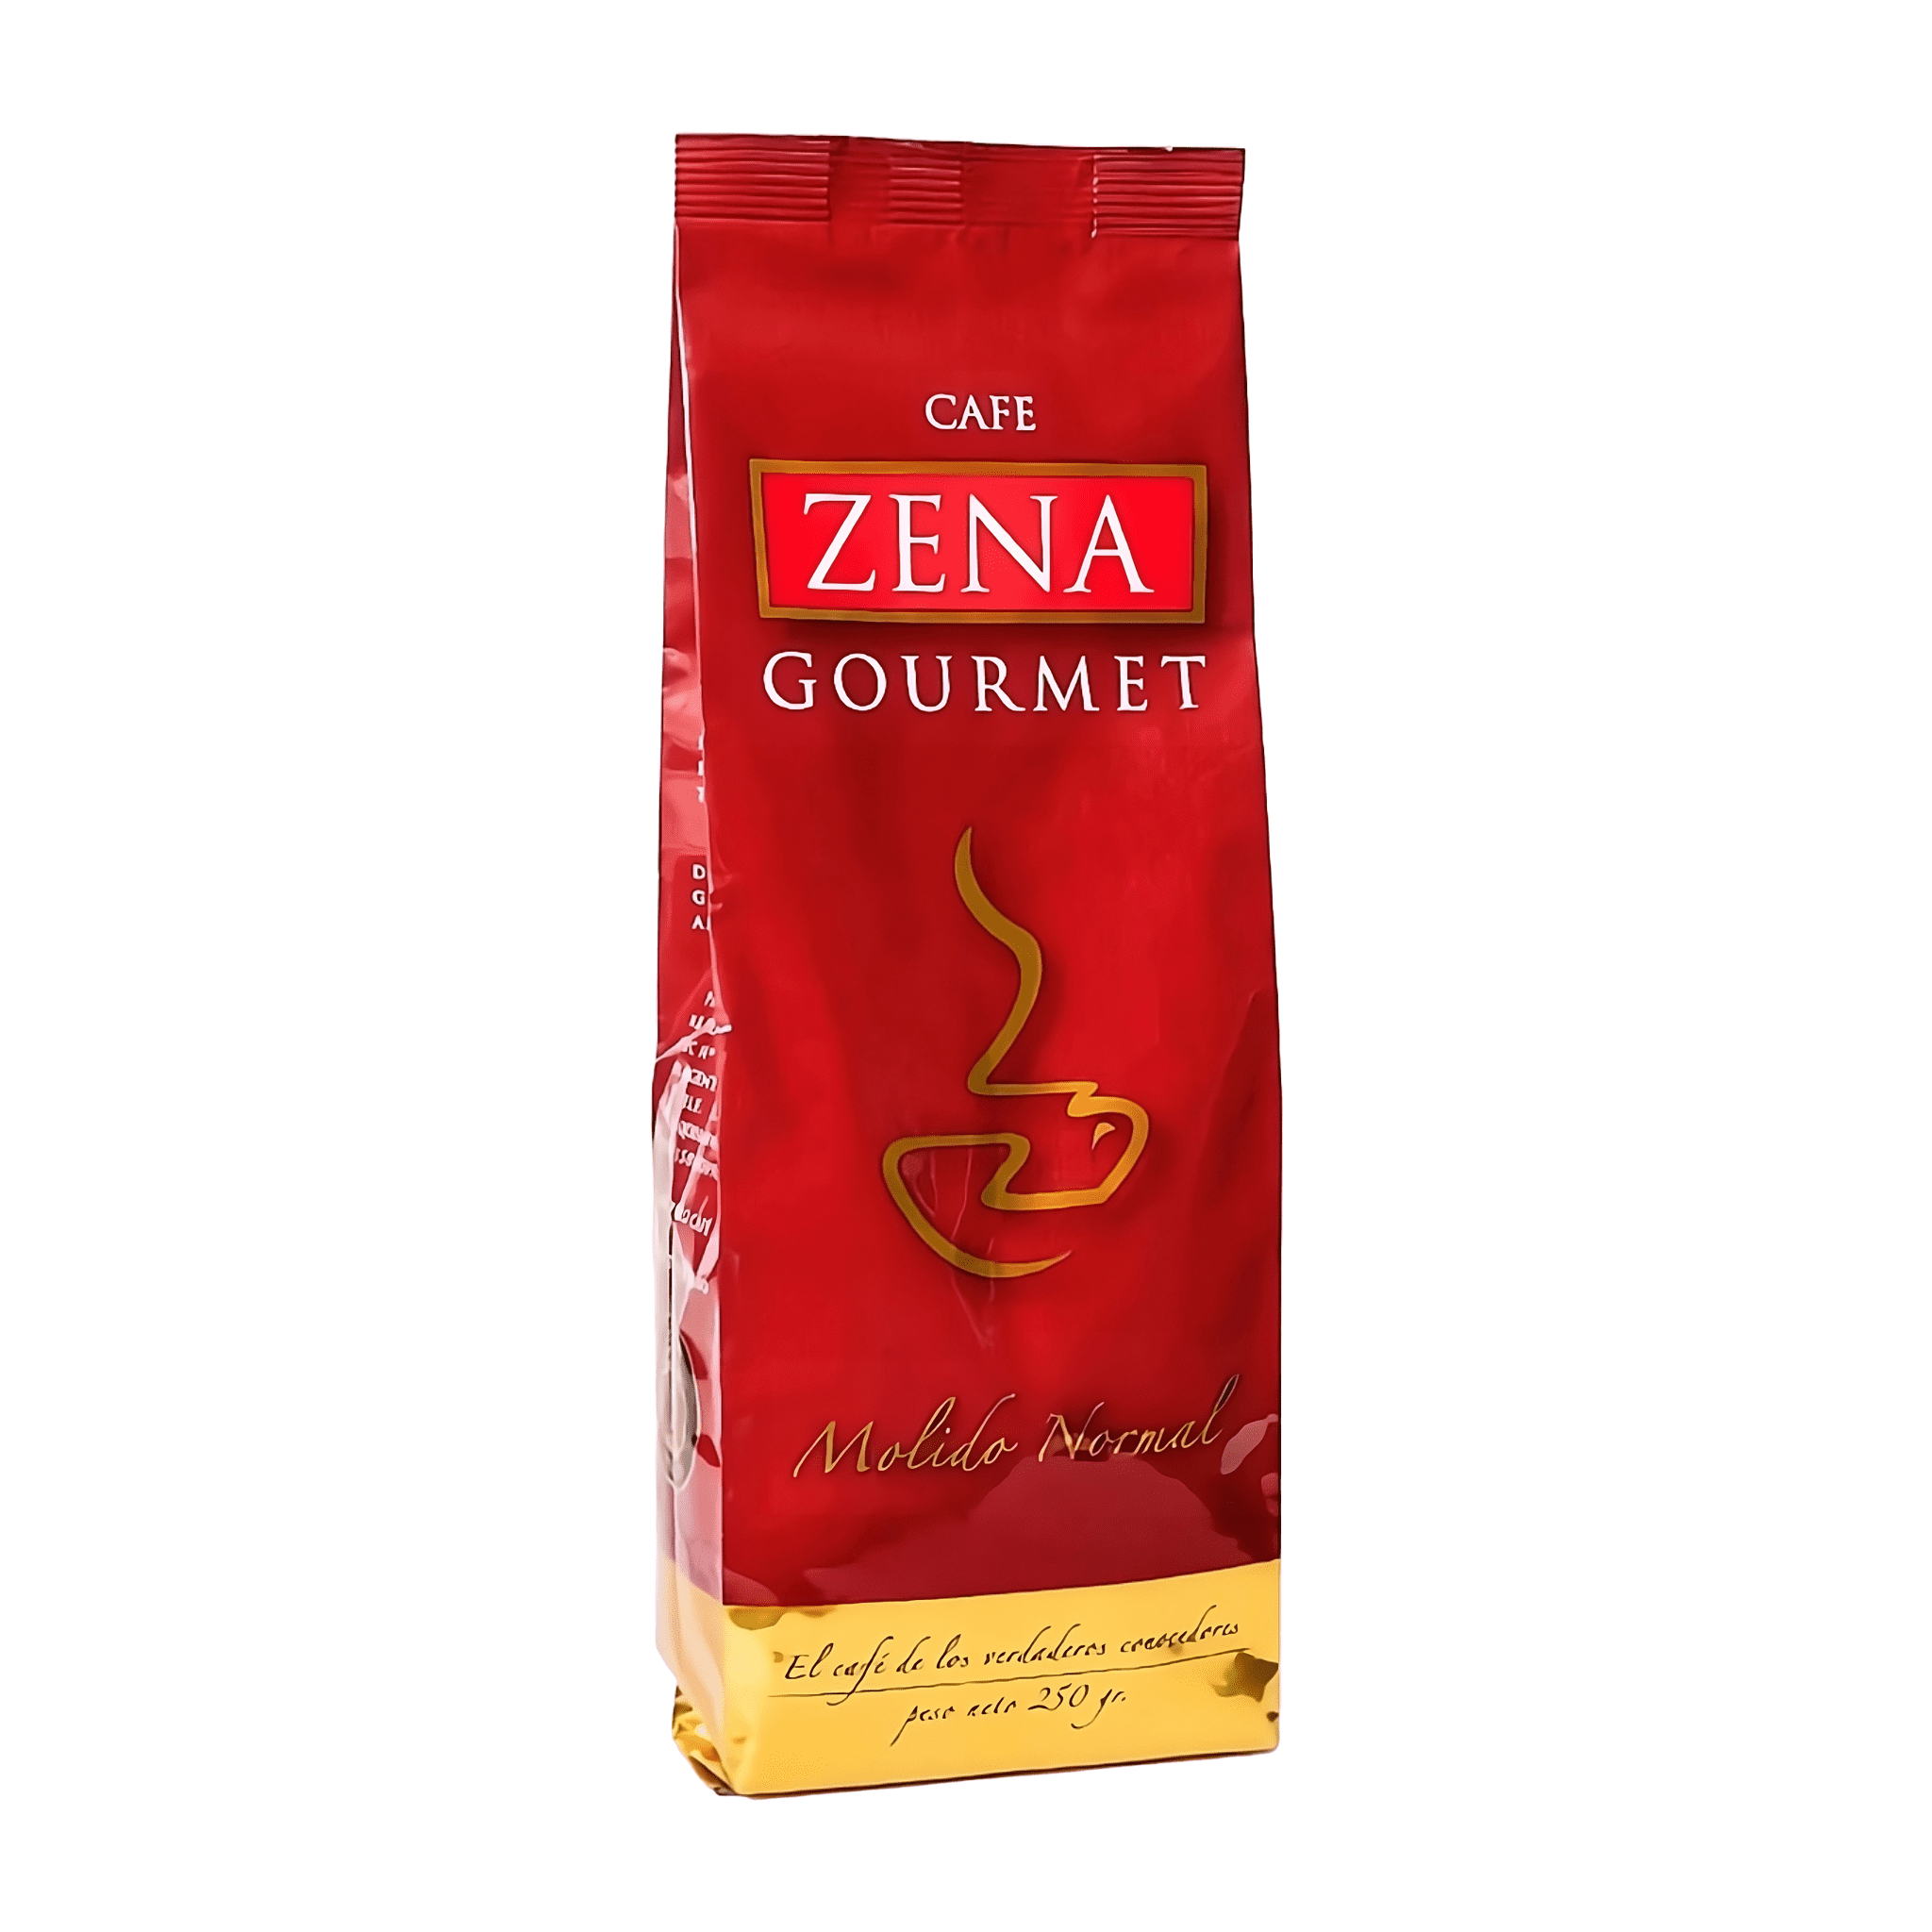 Café Zena Gourmet 250g grano molido normal